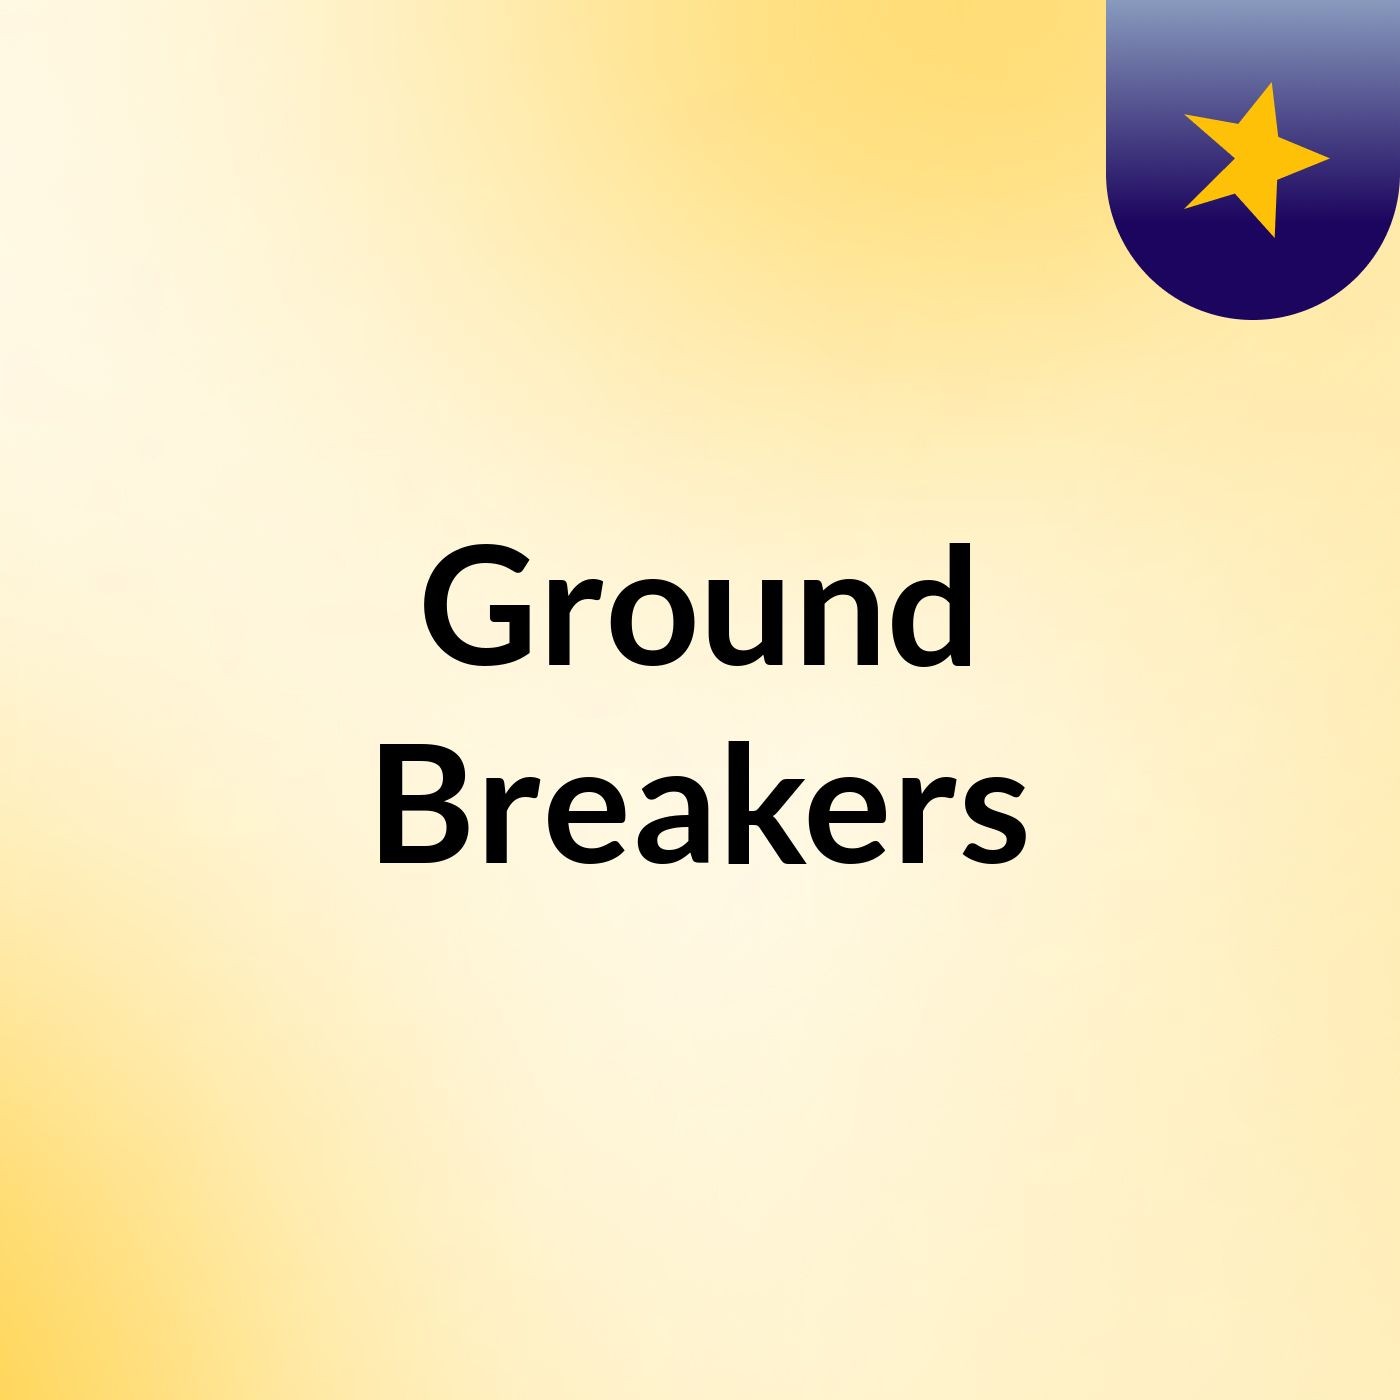 Ground Breakers